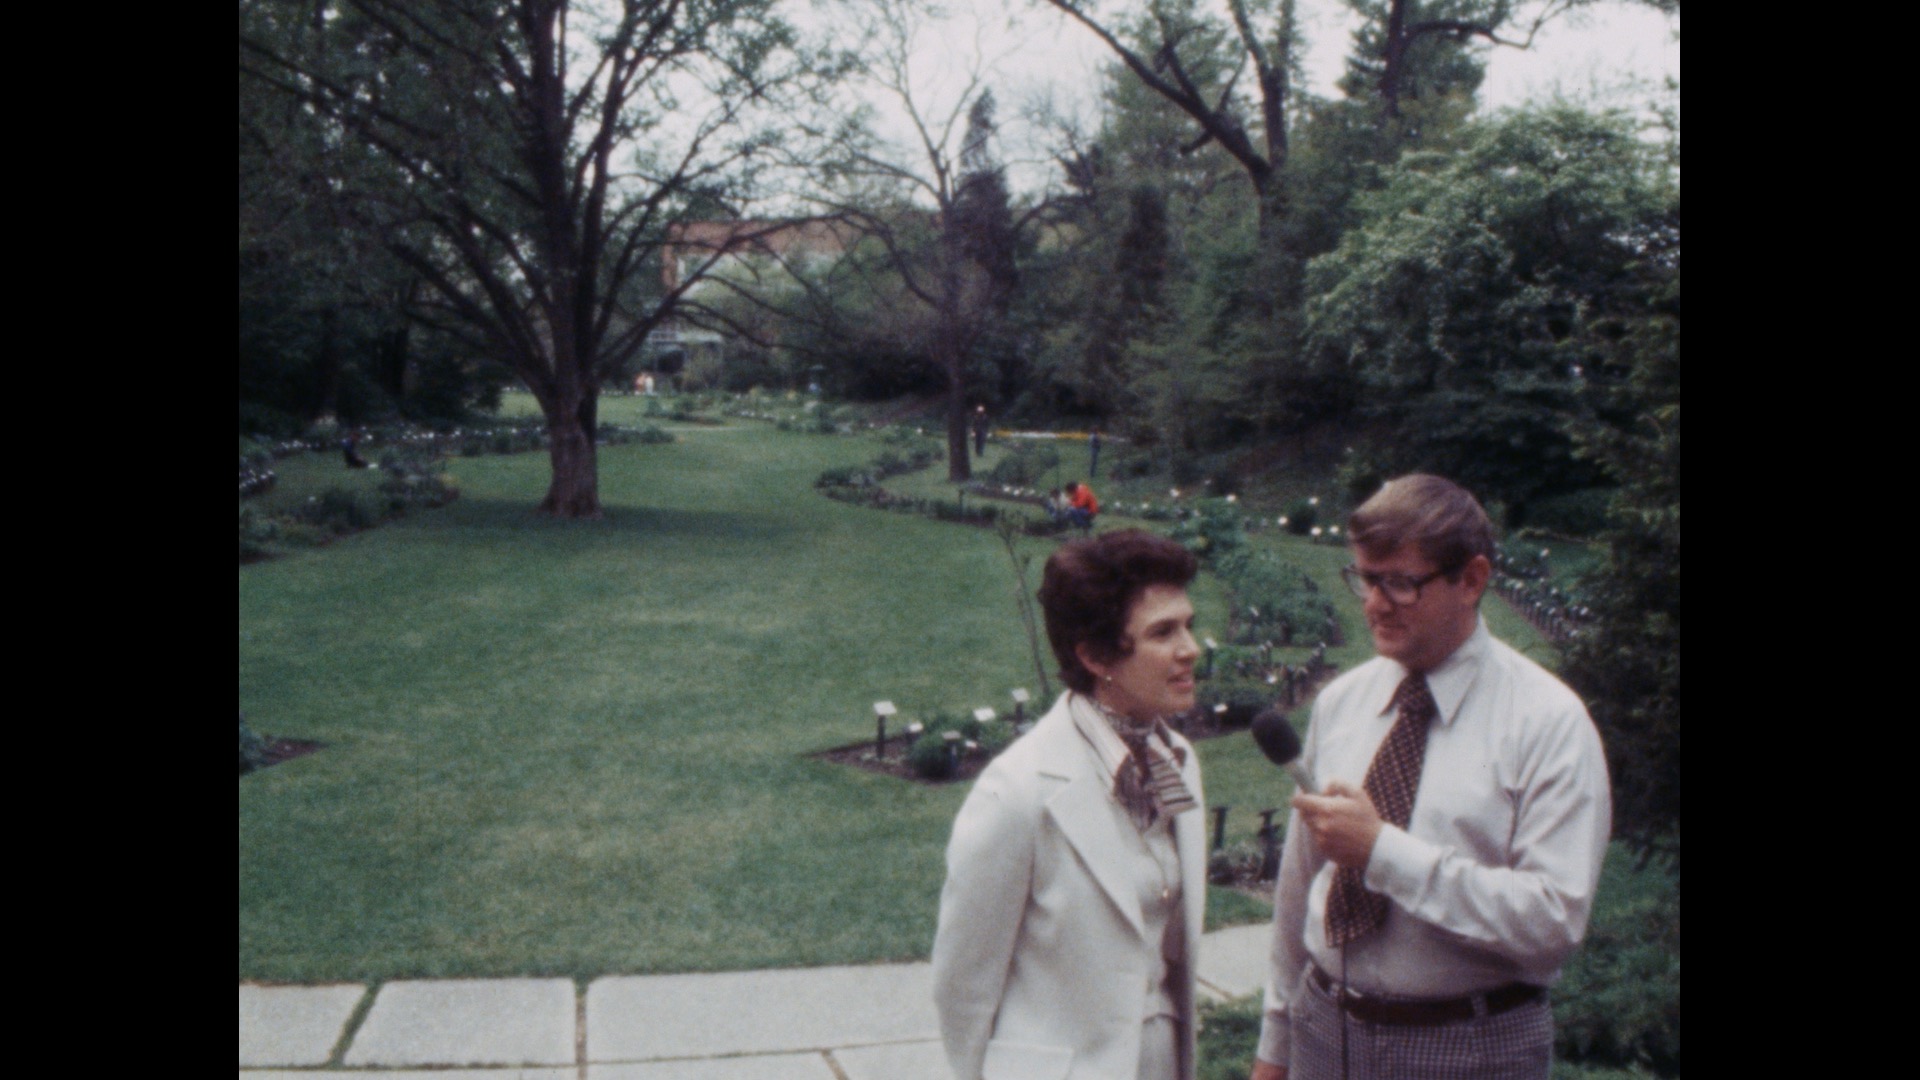 <i>MSU Panorama</i> with interviews at Beal Botanical Garden, circa 1970s